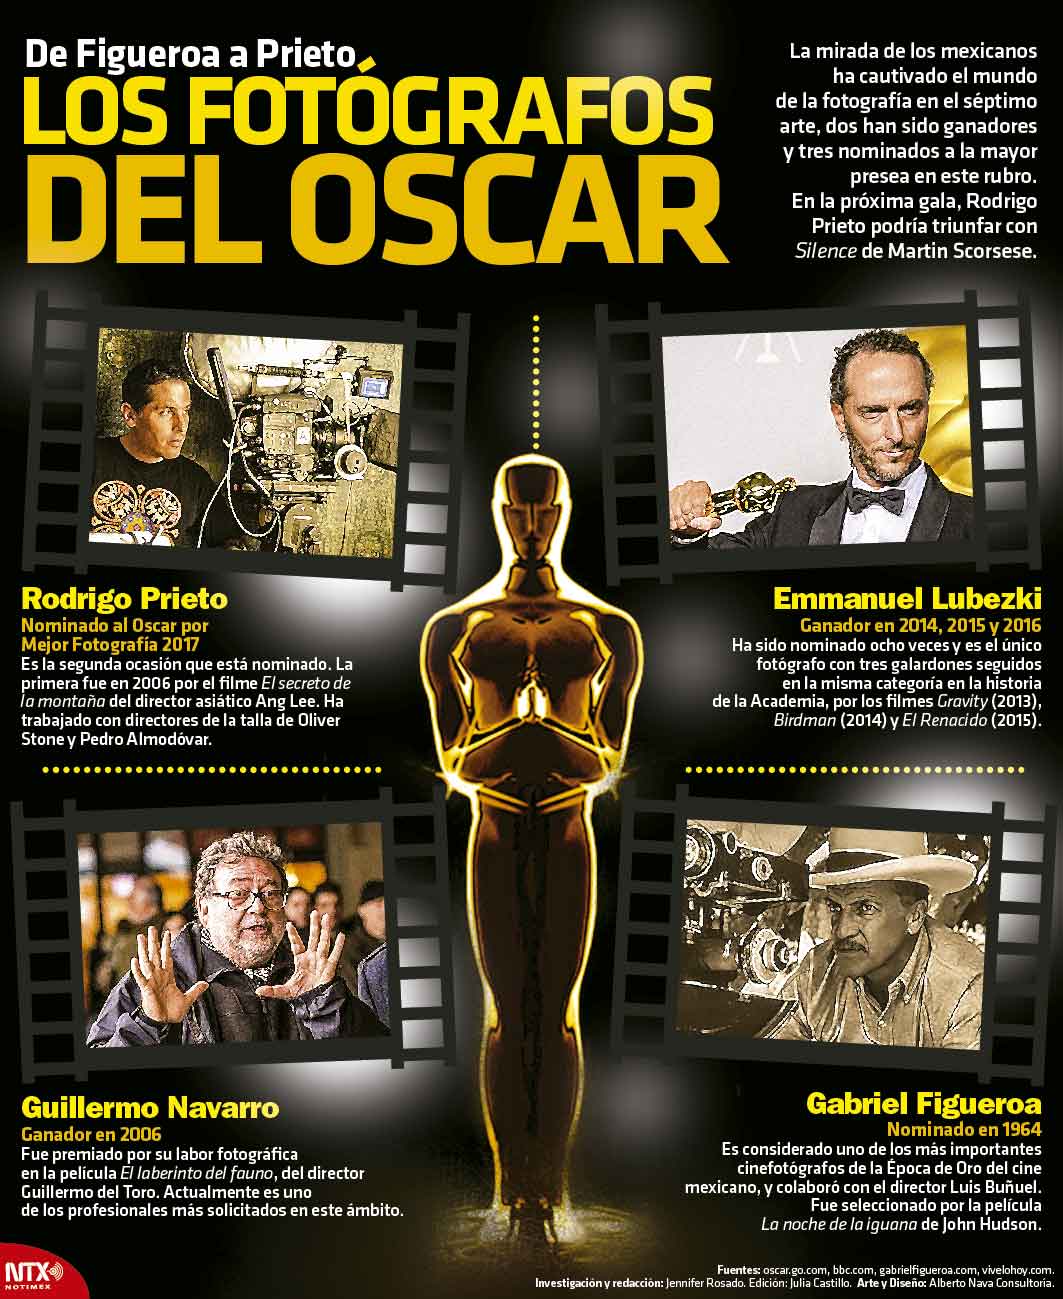 De Figueroa a Prieto, los fotgrafos del Oscar